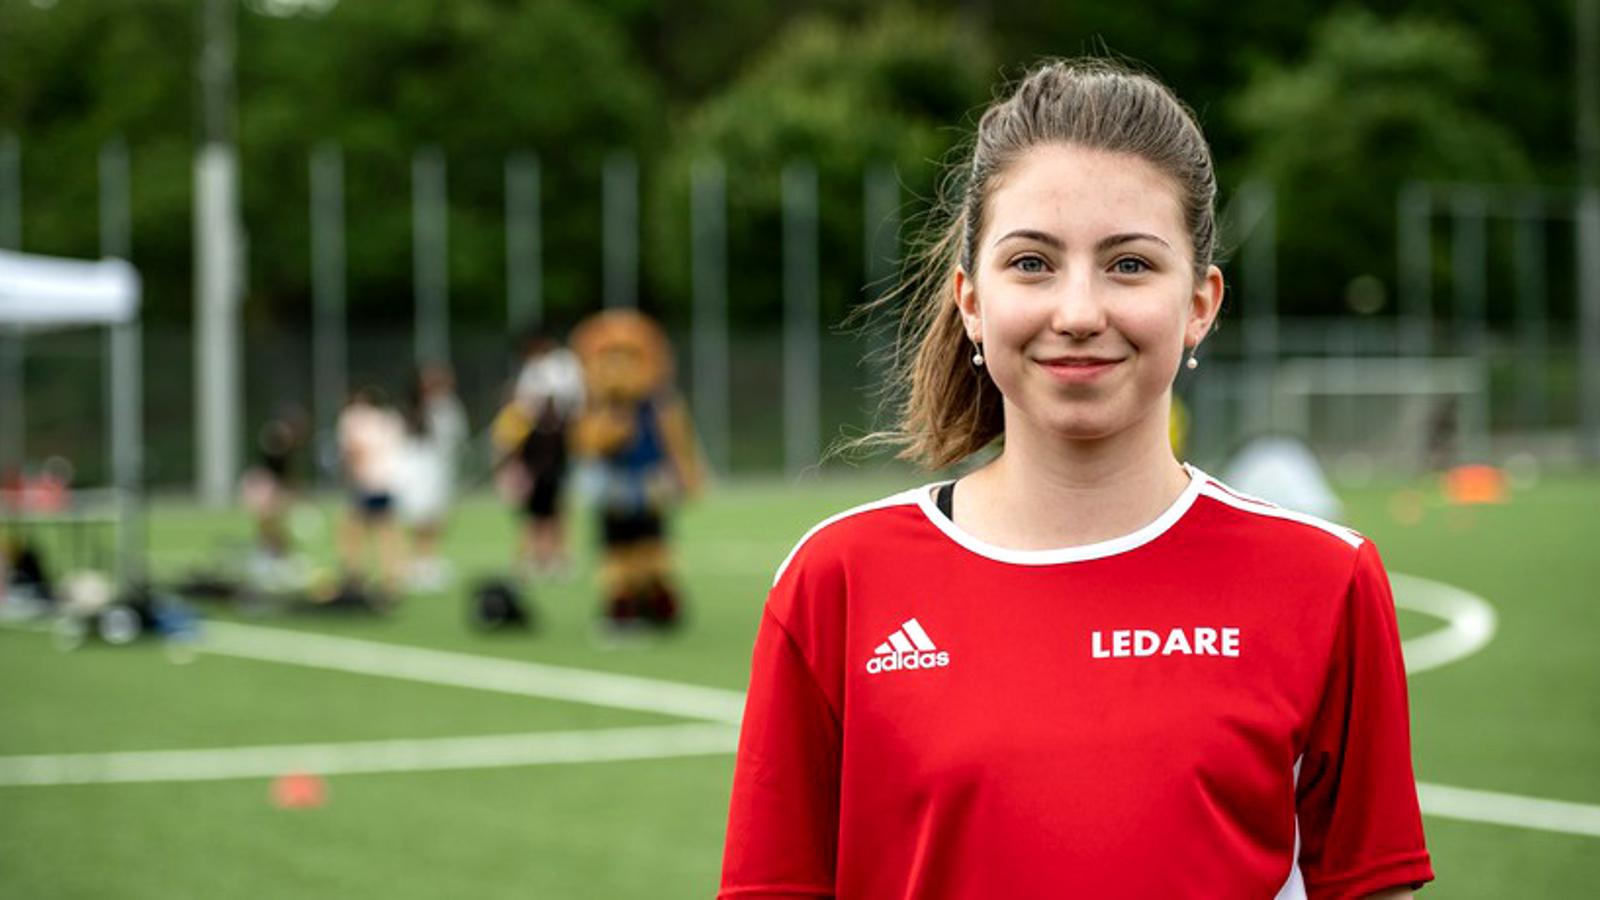 En bild på Julia Kaslin som är ny som ledare. Hon står på en fotbollsplan och bär en tröja med texten "Ledare" på.